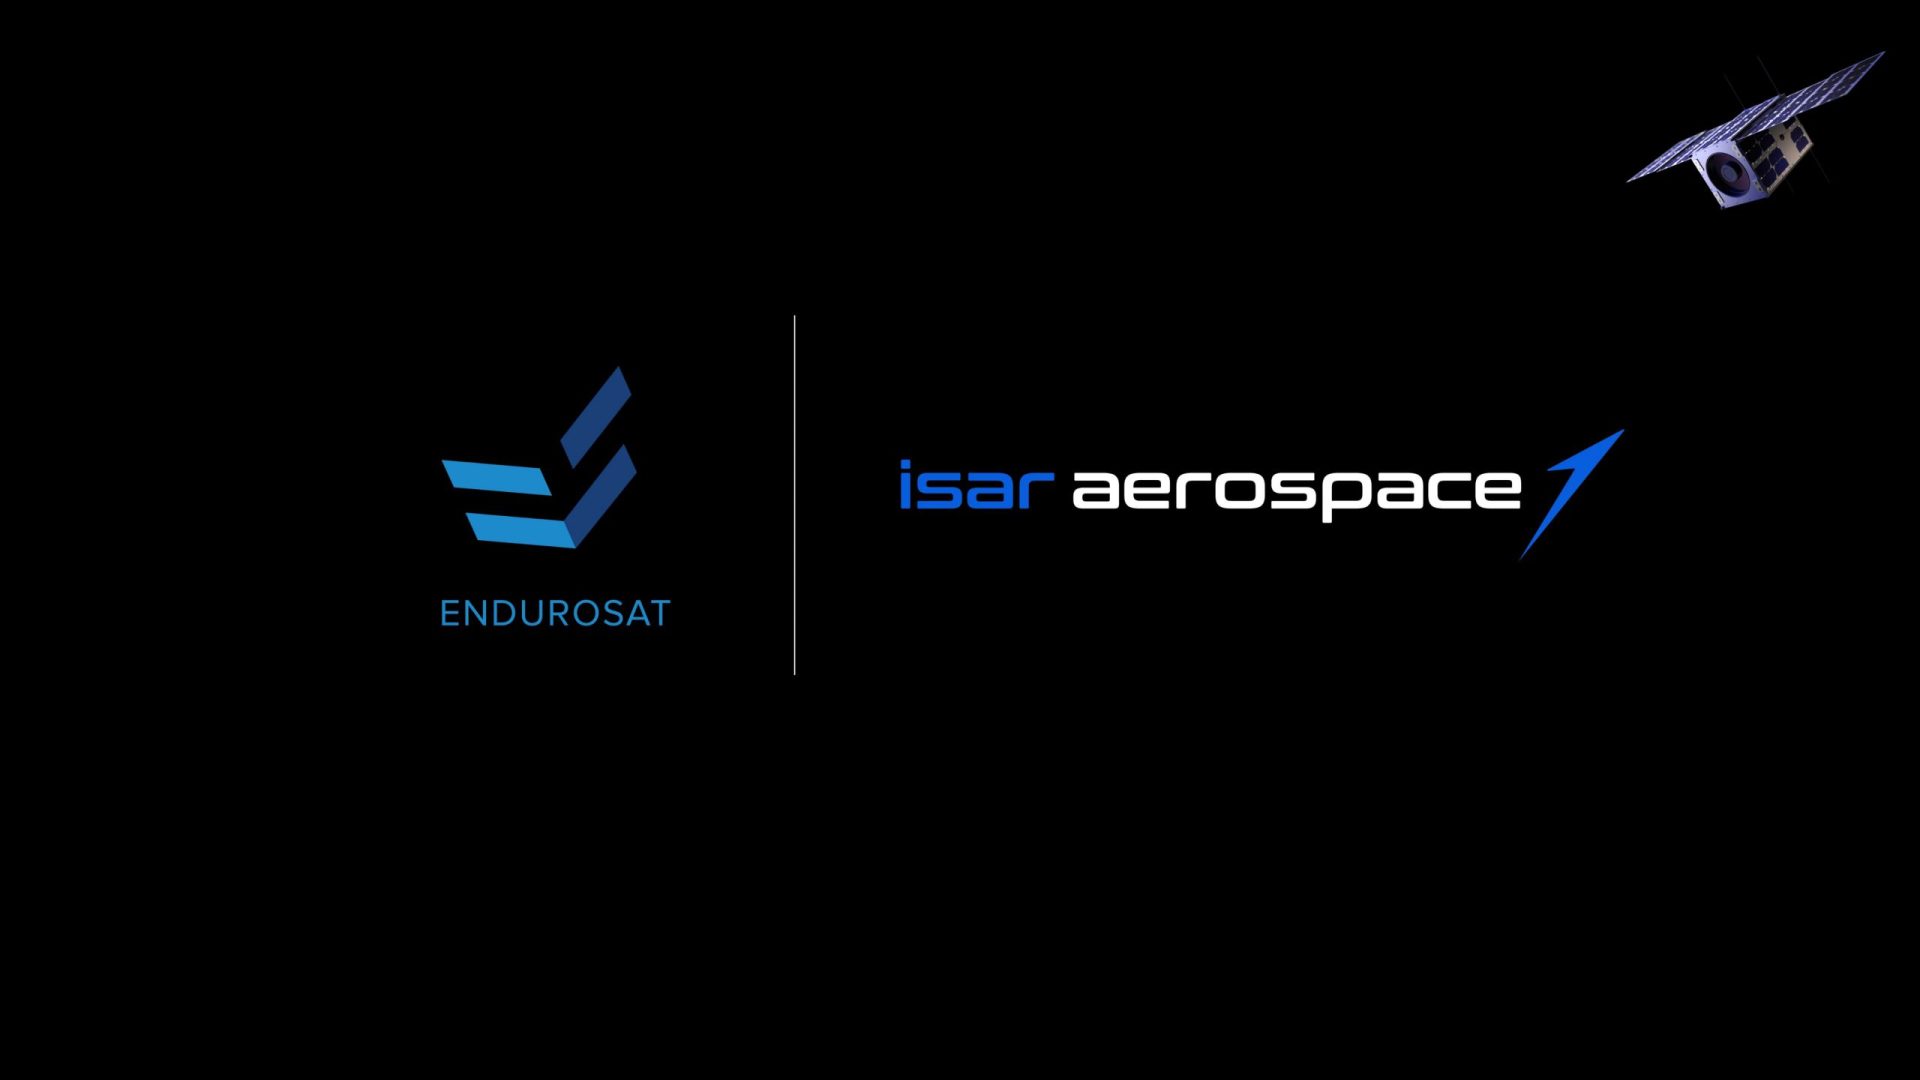 endurosat launch agreement isar aerospace scaled